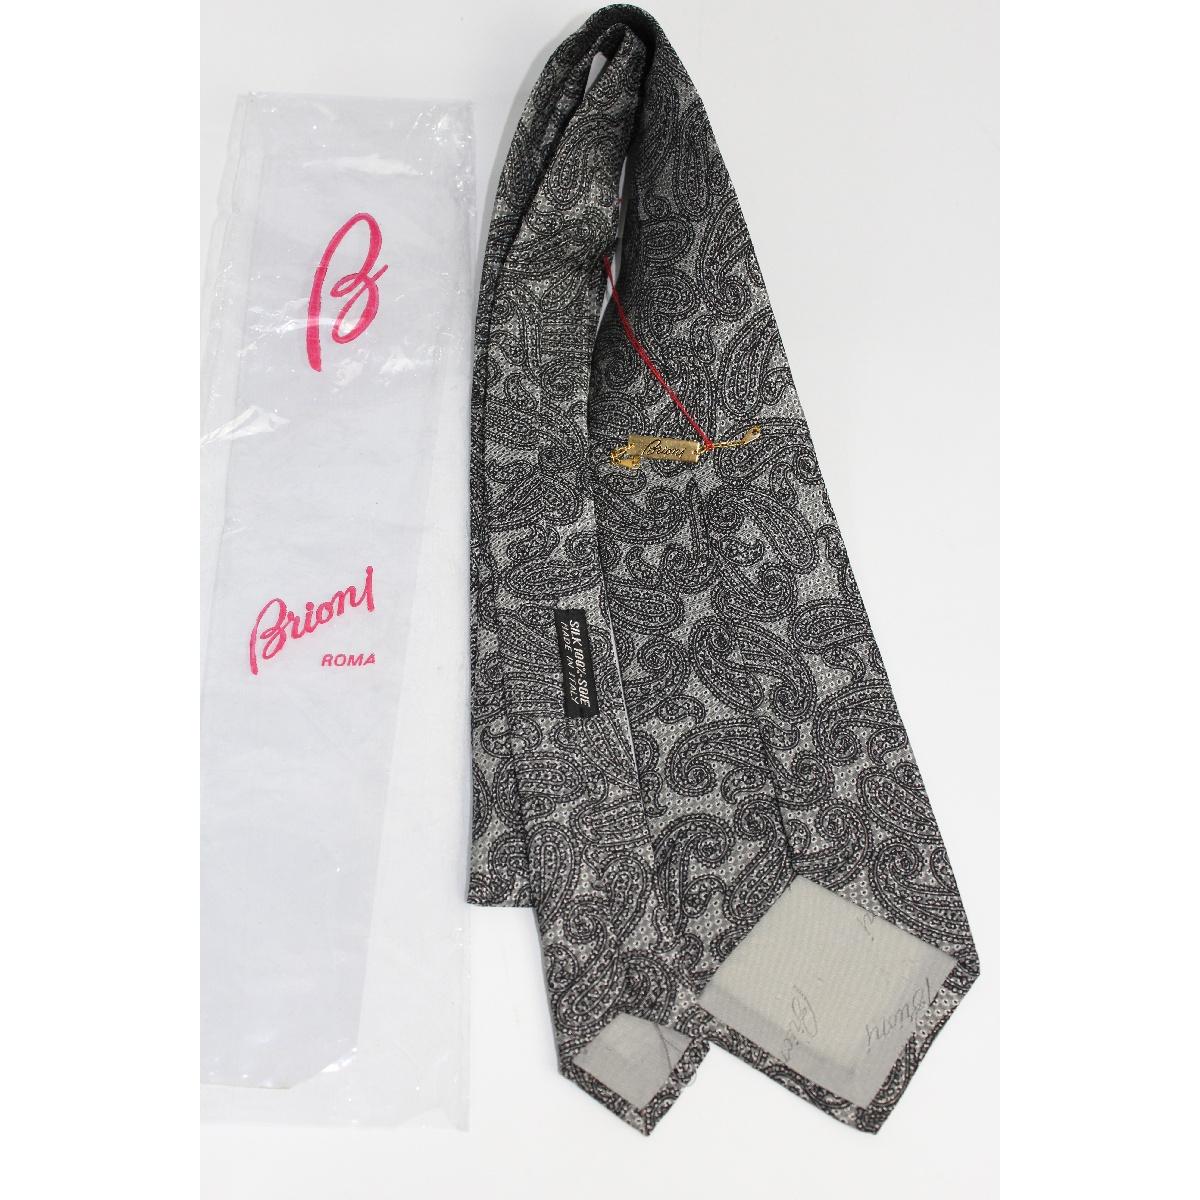 Brioni Vintage Seide schwarze Krawatte, mit grauem Paisley. Hergestellt in Italien. Neu ohne Etikett.

Länge: etwa 150 cm
Breite: etwa 9 cm